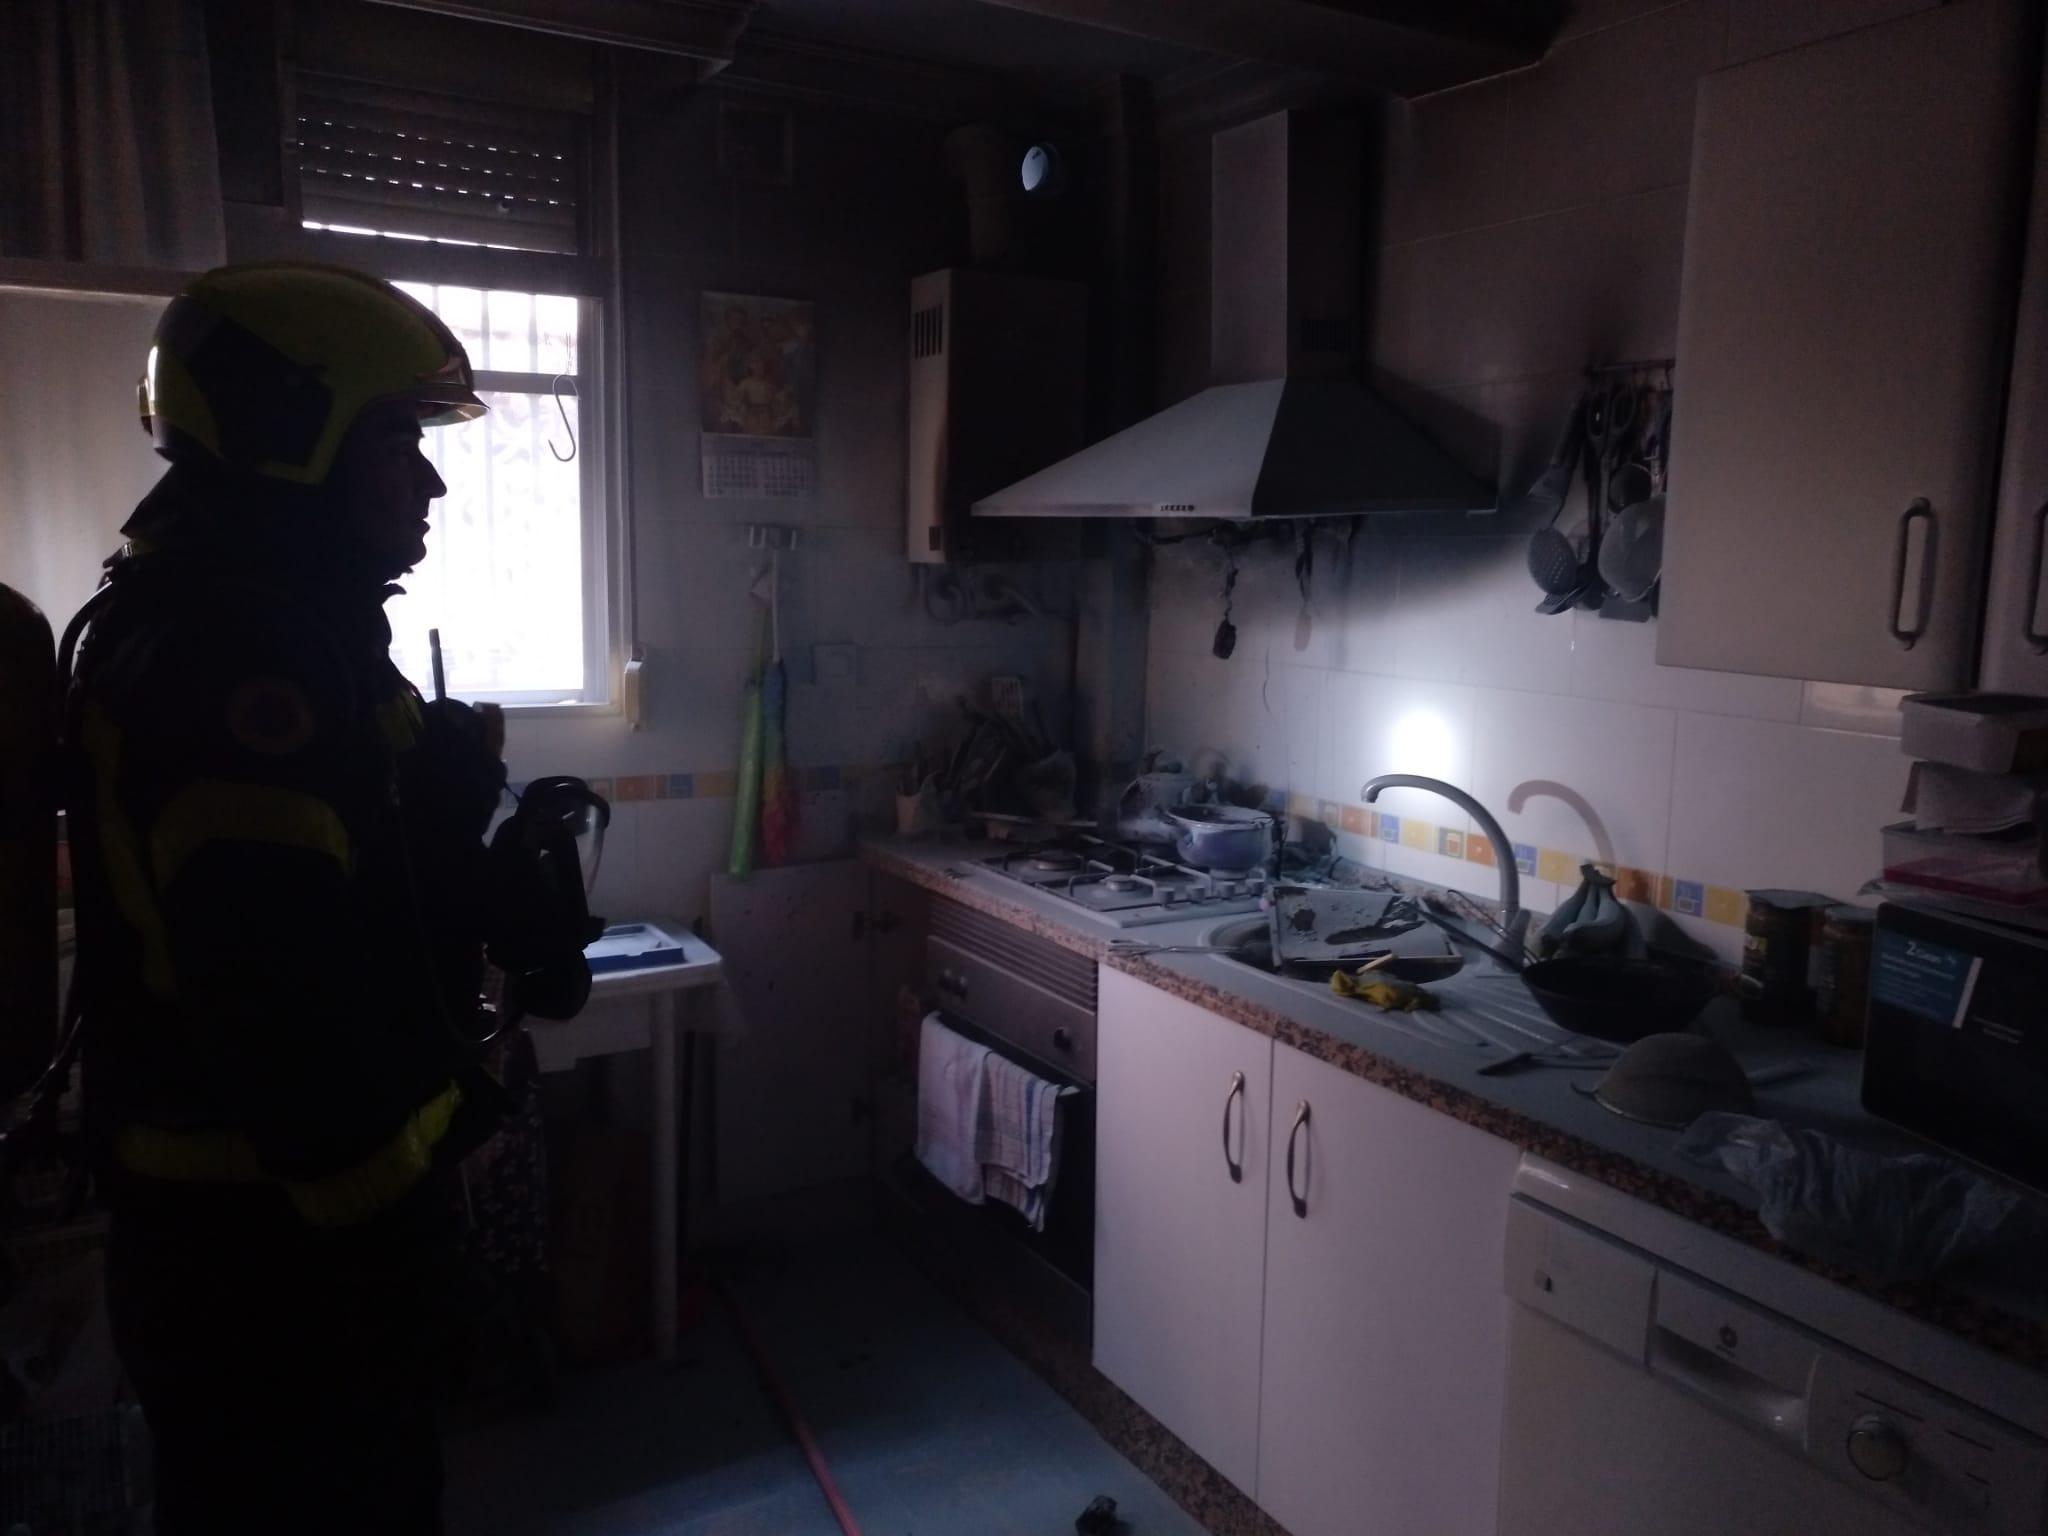 Afectado por humo un hombre tras socorrer a varias personas en el incendio de una casa en Jerez